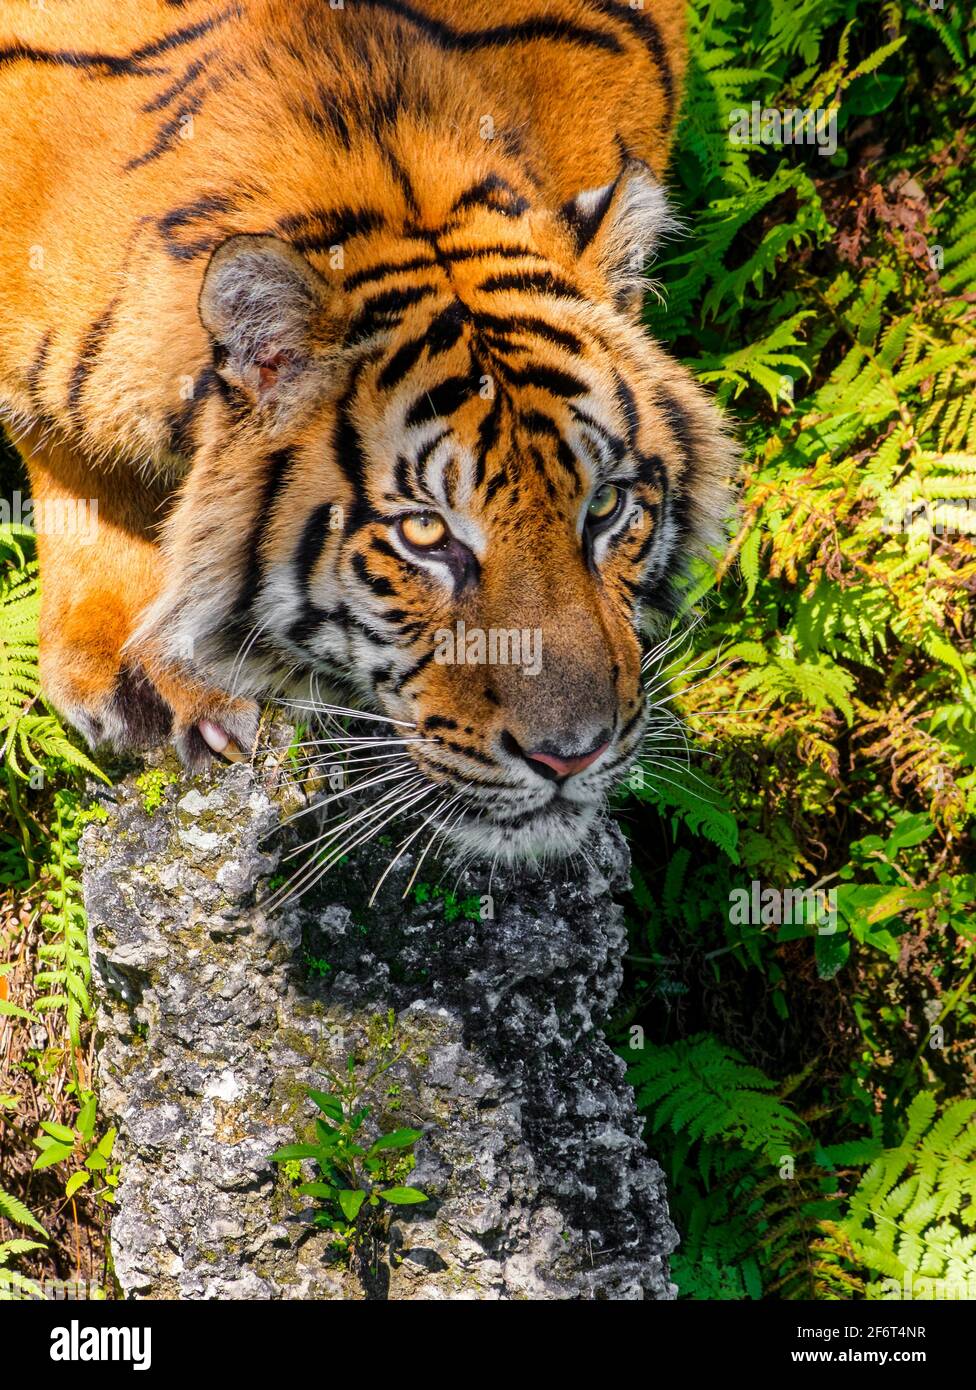 El tigre (Panthera tigris) es la especie de gato más grande, más reconocible por su patrón de rayas verticales oscuras en piel rojiza-anaranjada con un Foto de stock